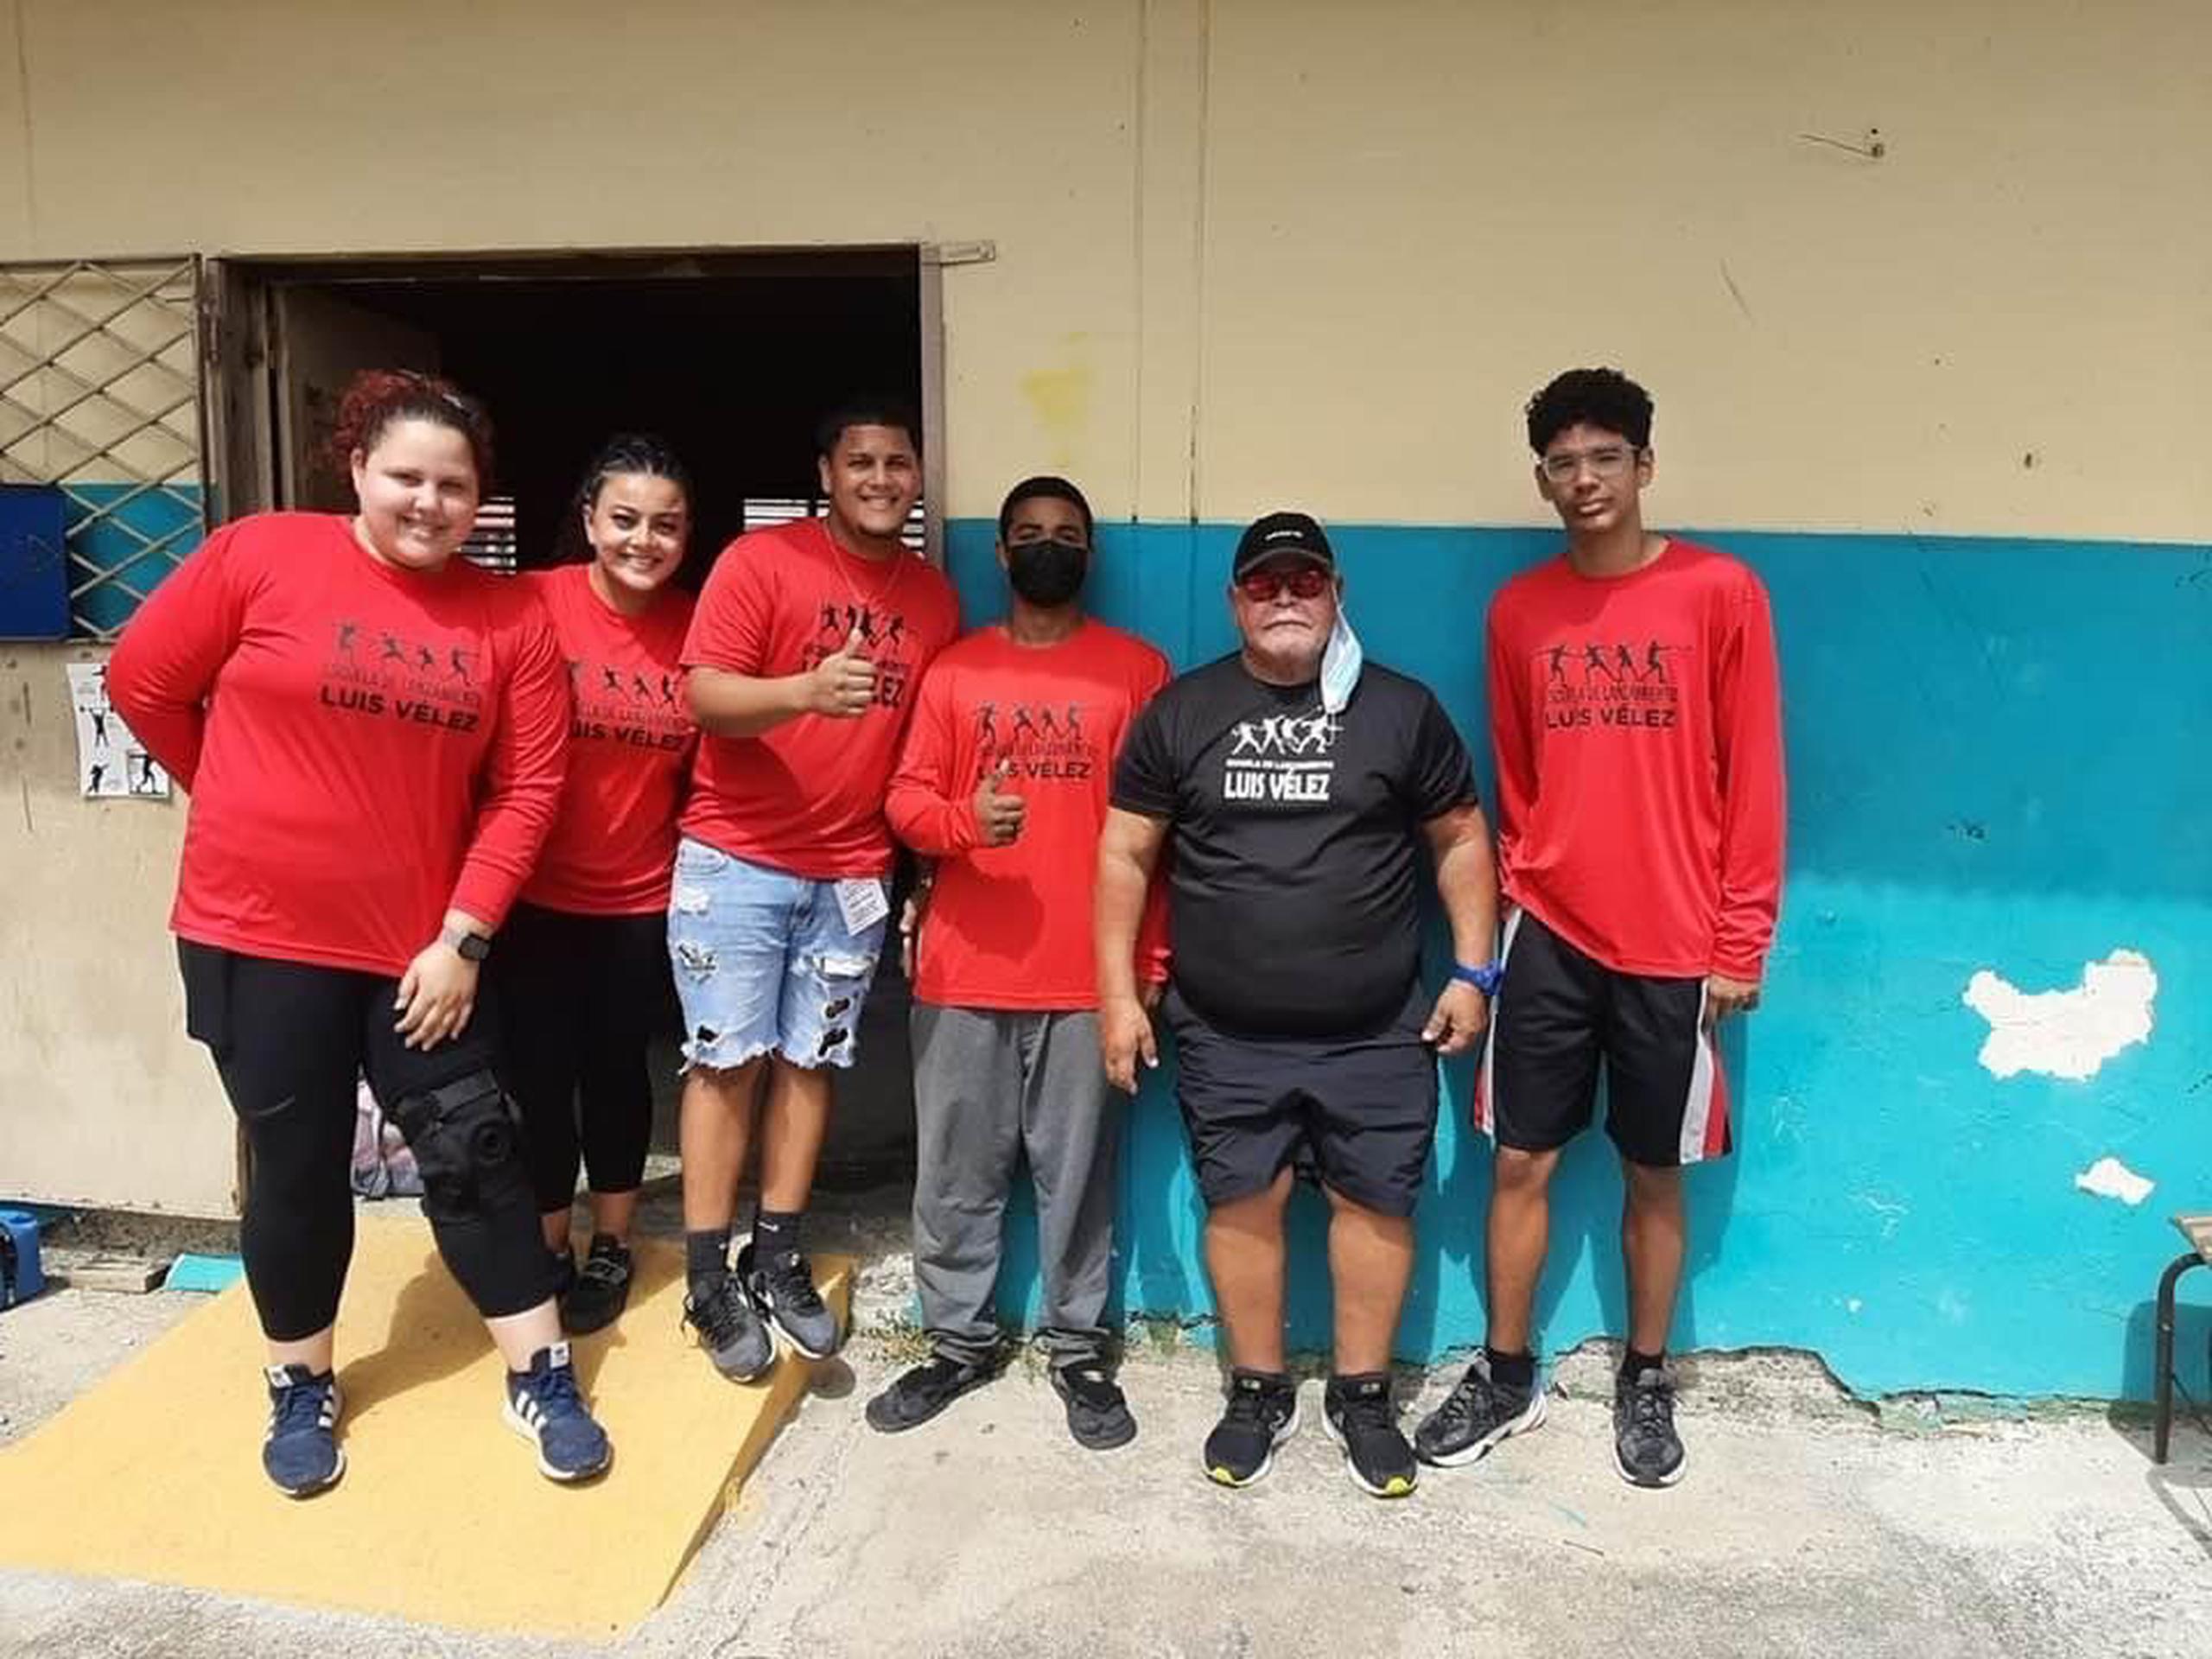 Aquí aparecen algunos de los participantes de la Escuela de Lanzadores Luis Vélez, establecida en el patio de la Escuela Dr. Manuel de la Pila Iglesias, en Ponce.